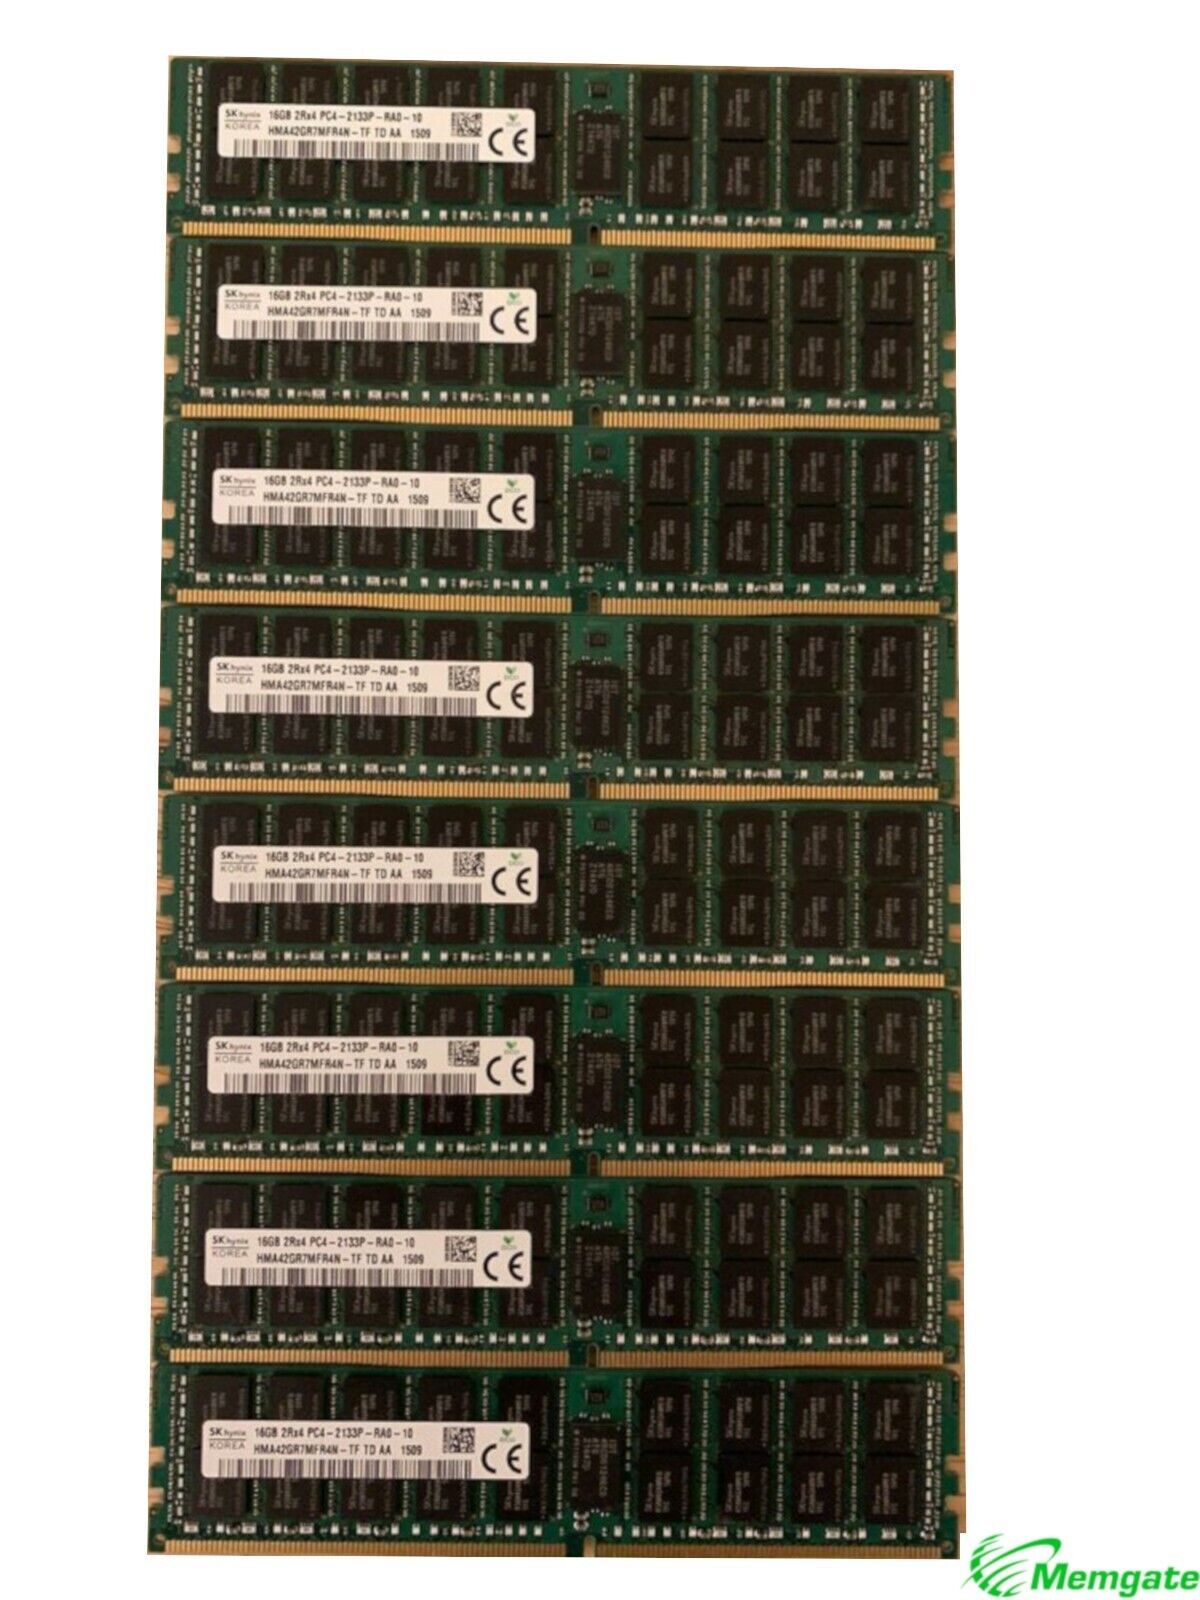 384GB (24x16GB) PC4-17000P-R DDR4 2133P ECC RDIMM Memory for Dell PowerEdge R630